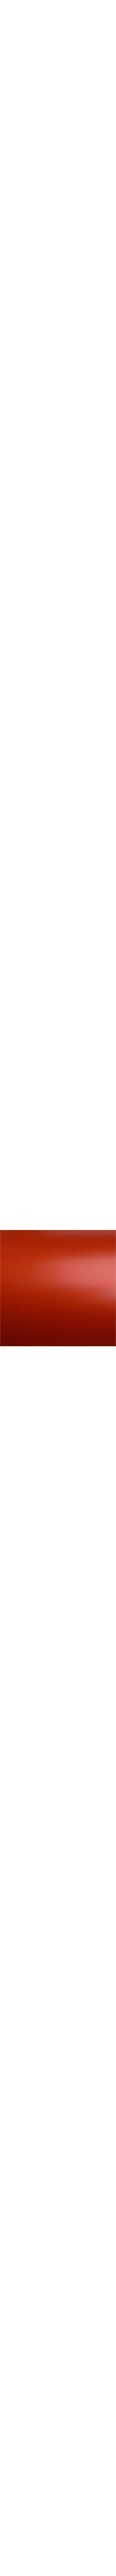 2080-S363 Satin Smoldering red en 1.524m x 22.86ml